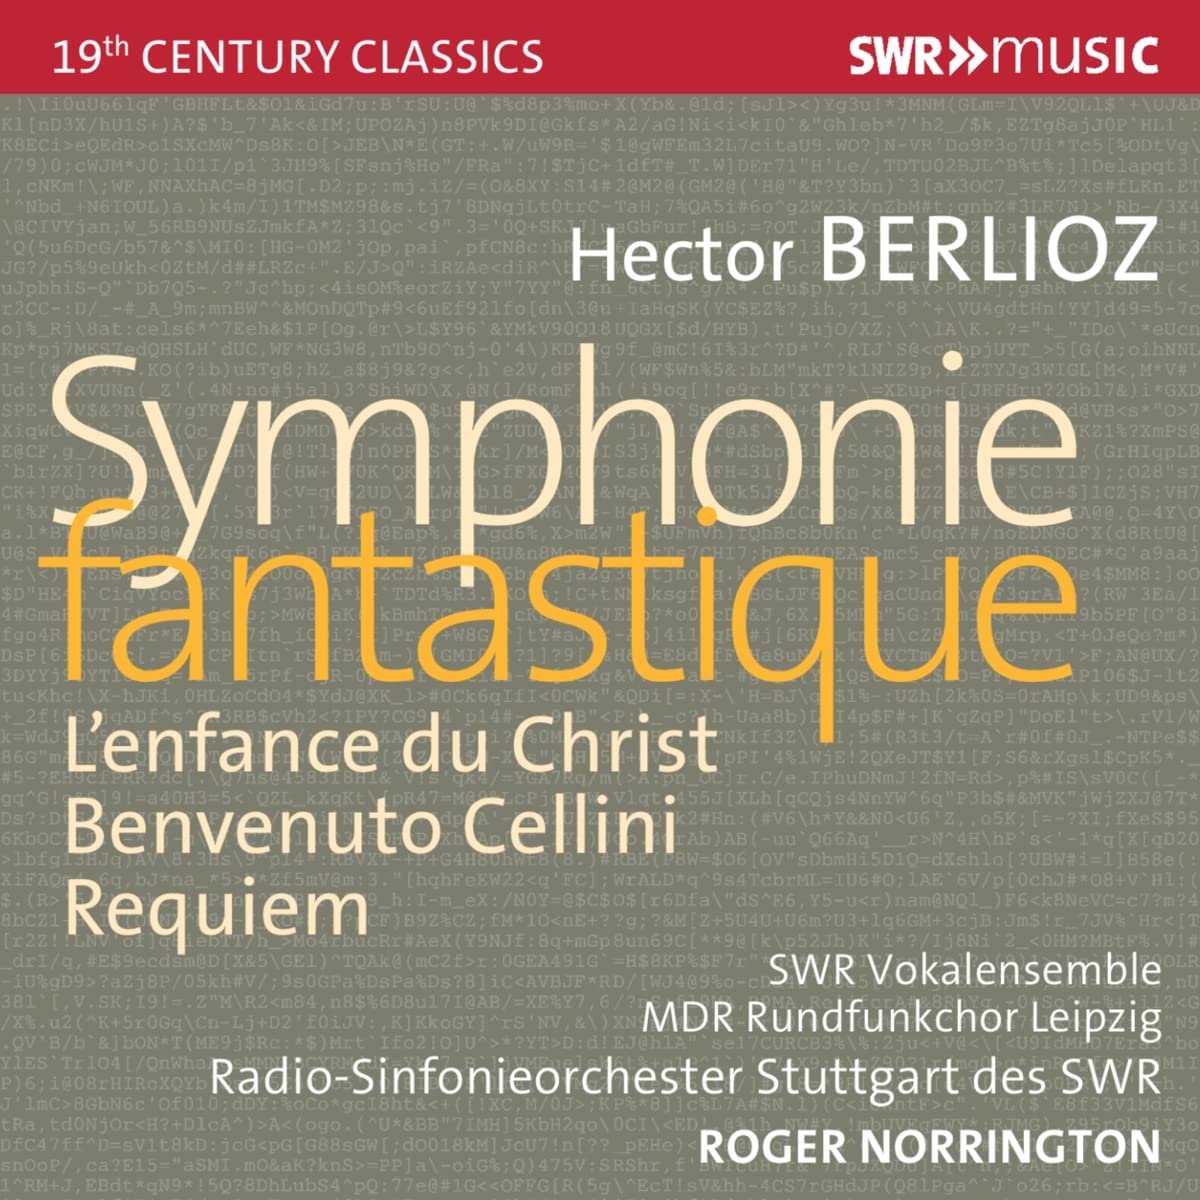 Audio Cd Hector Berlioz - ymphonie Fantastique LEnfance Du Christ Benvenuto Cellini & Requiem 7 Cd NUOVO SIGILLATO EDIZIONE DEL SUBITO DISPONIBILE